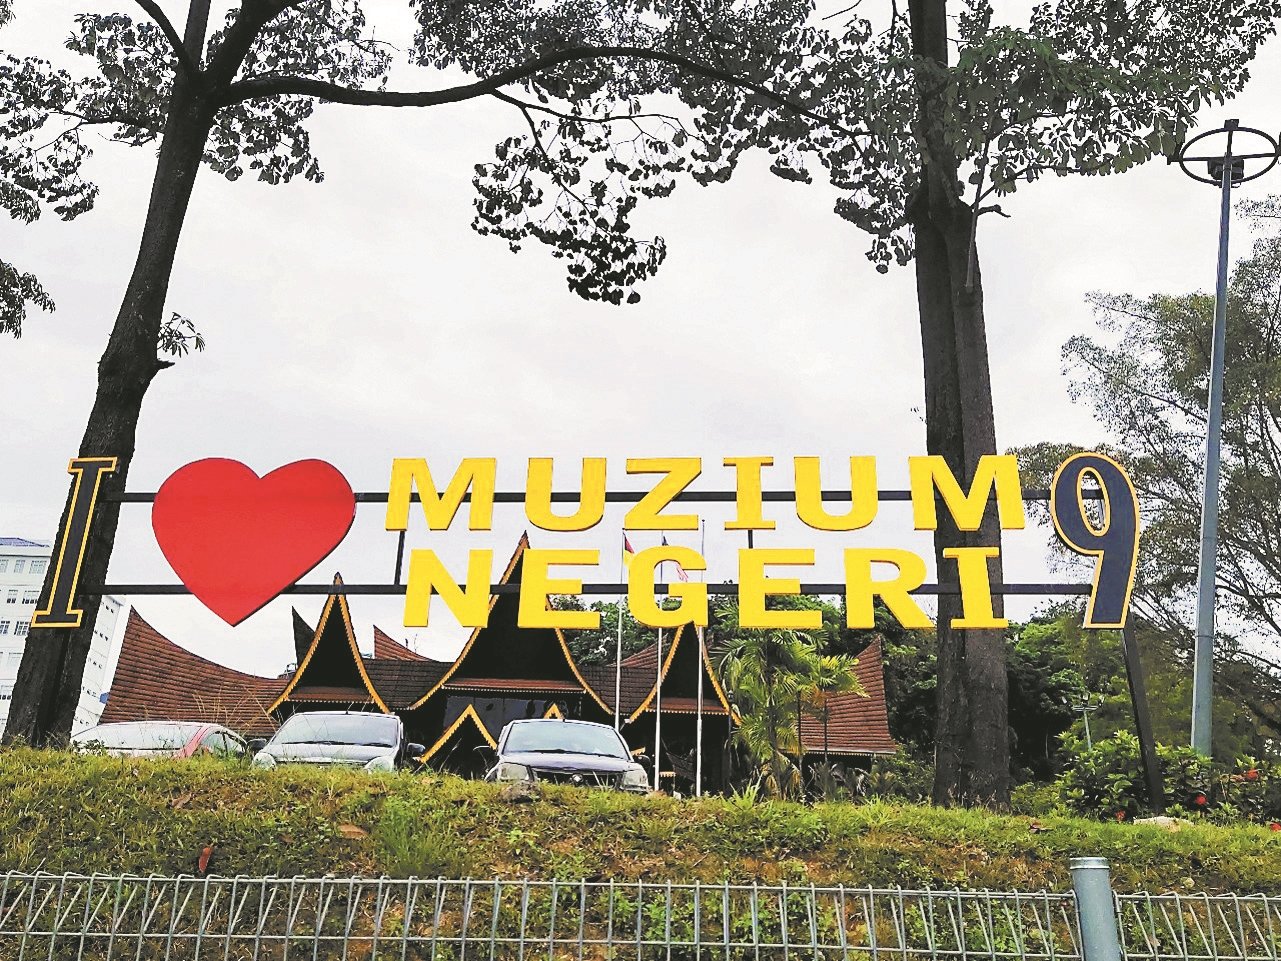 在森州博物馆范围设立的“我爱森州博物馆”（I Love Muzium Negeri 9），增添打卡地点。